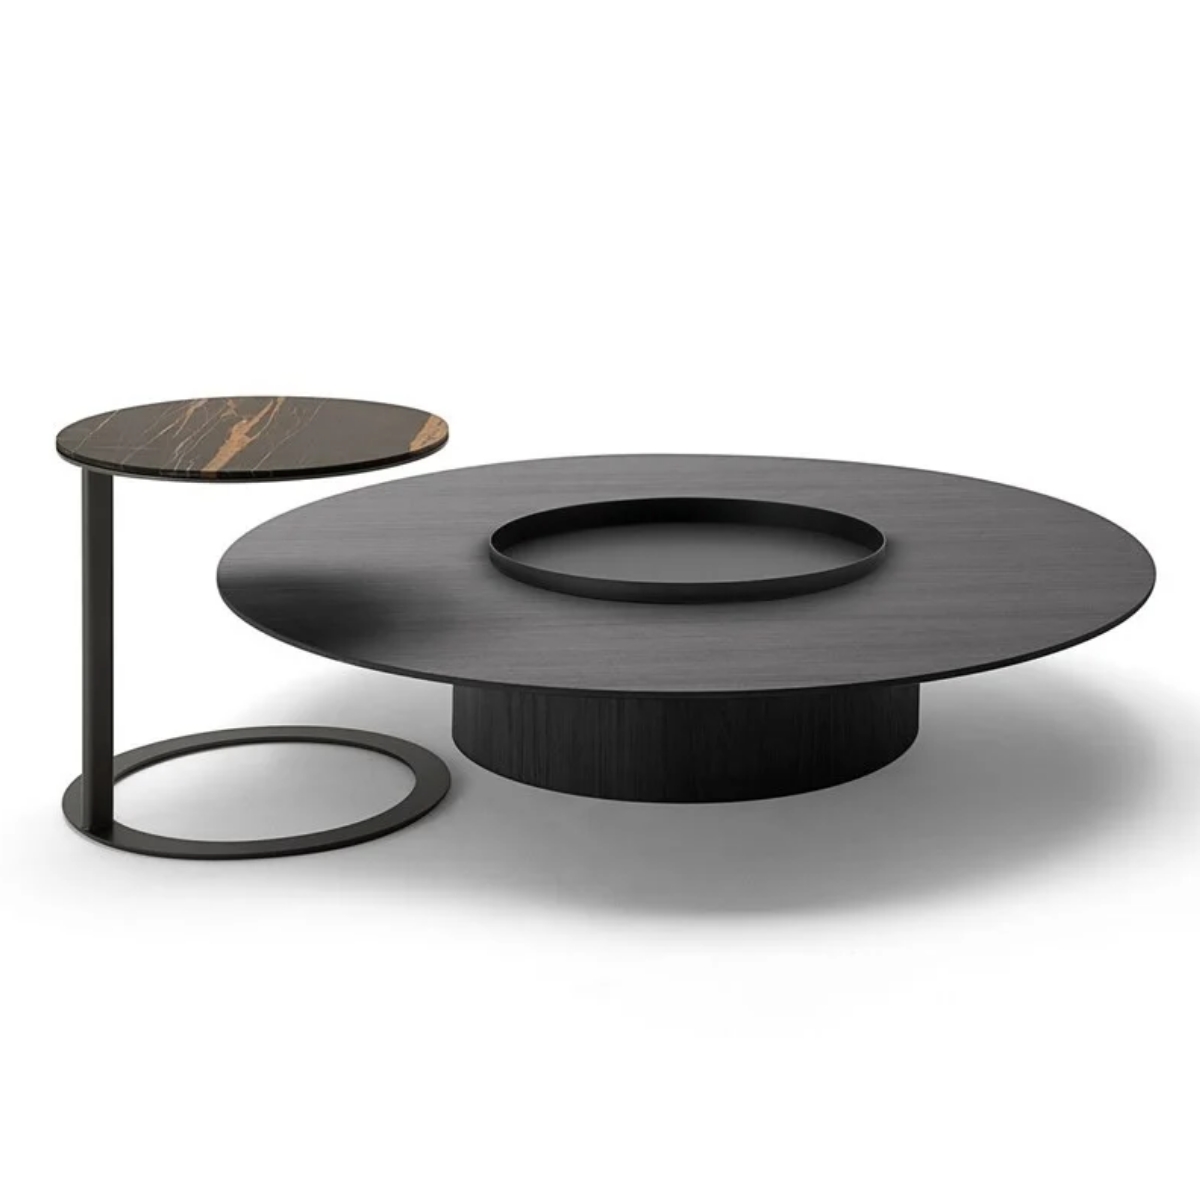 Tethys side tables by Oscar & Gabriele Buratti